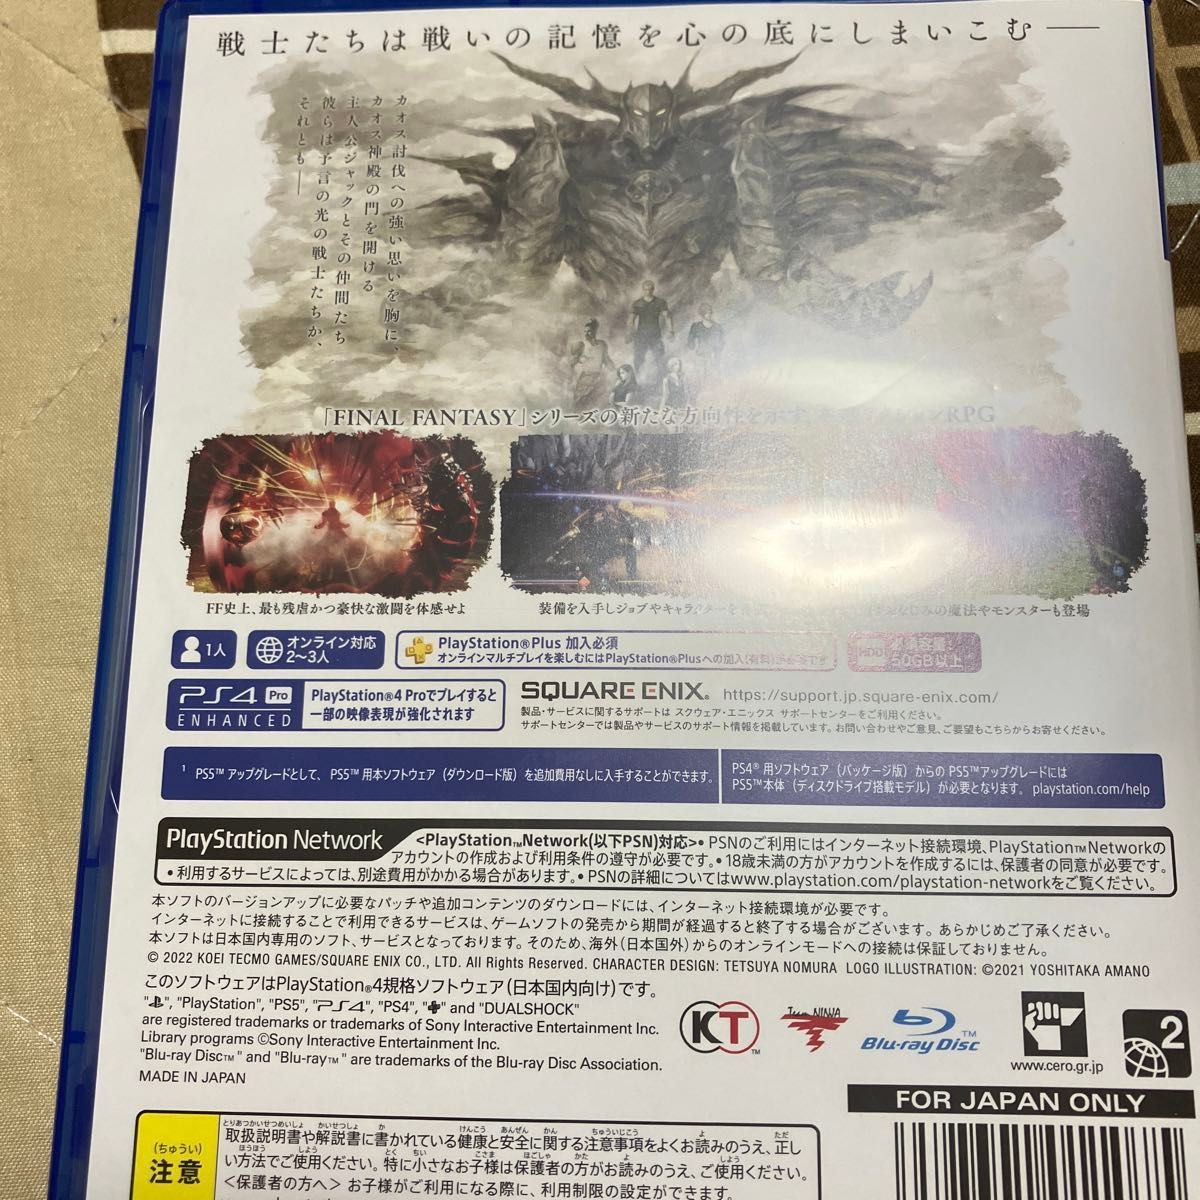 【PS4】 ストレンジャー オブ パラダイスファイナルファンタジー オリジン